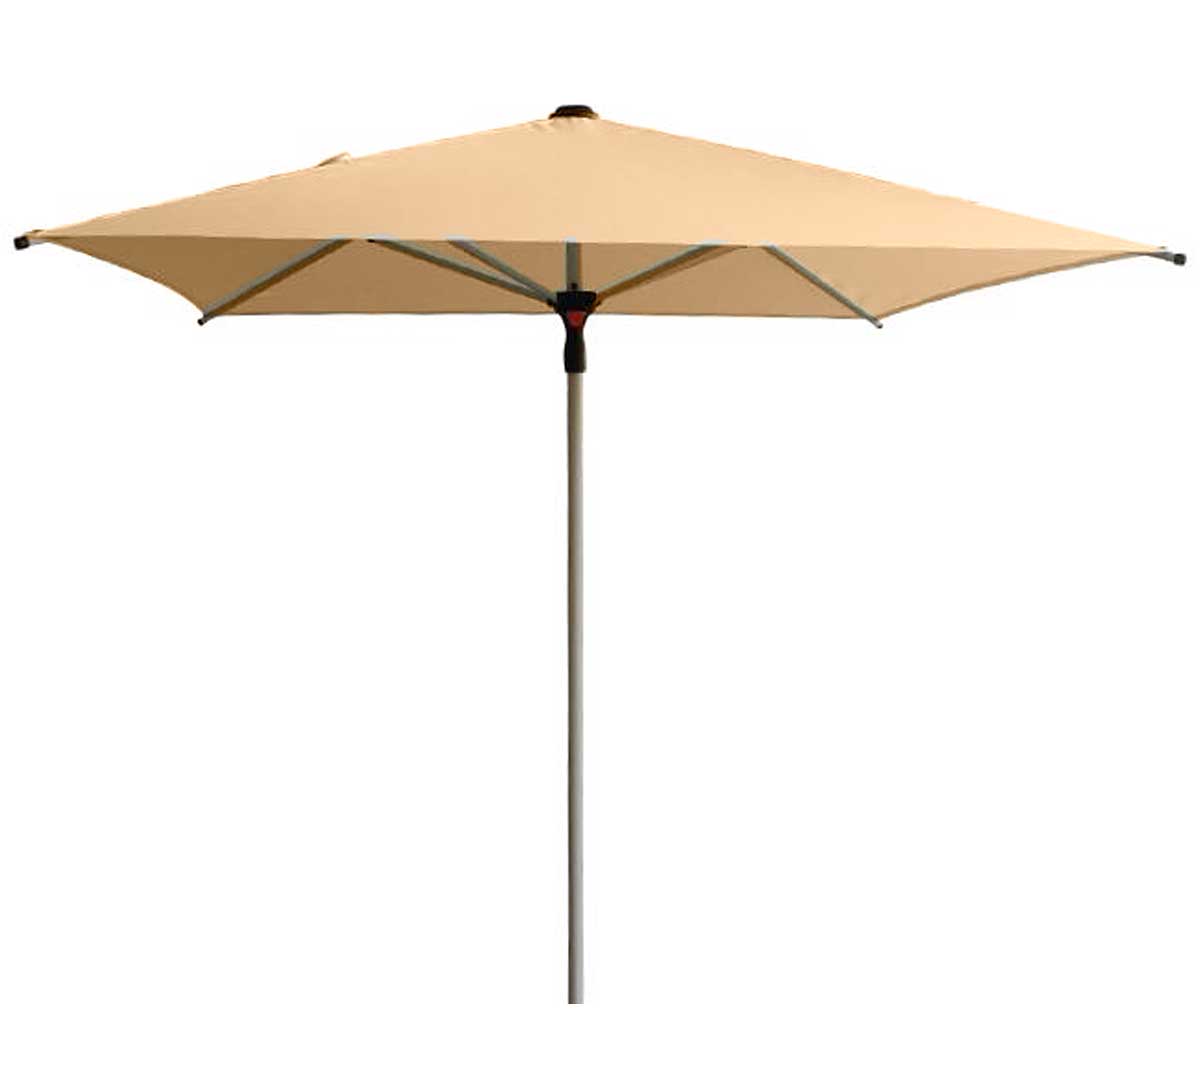 conva-parasol-aluminio-heavy-duty-875-acrilico-beige-arena-01